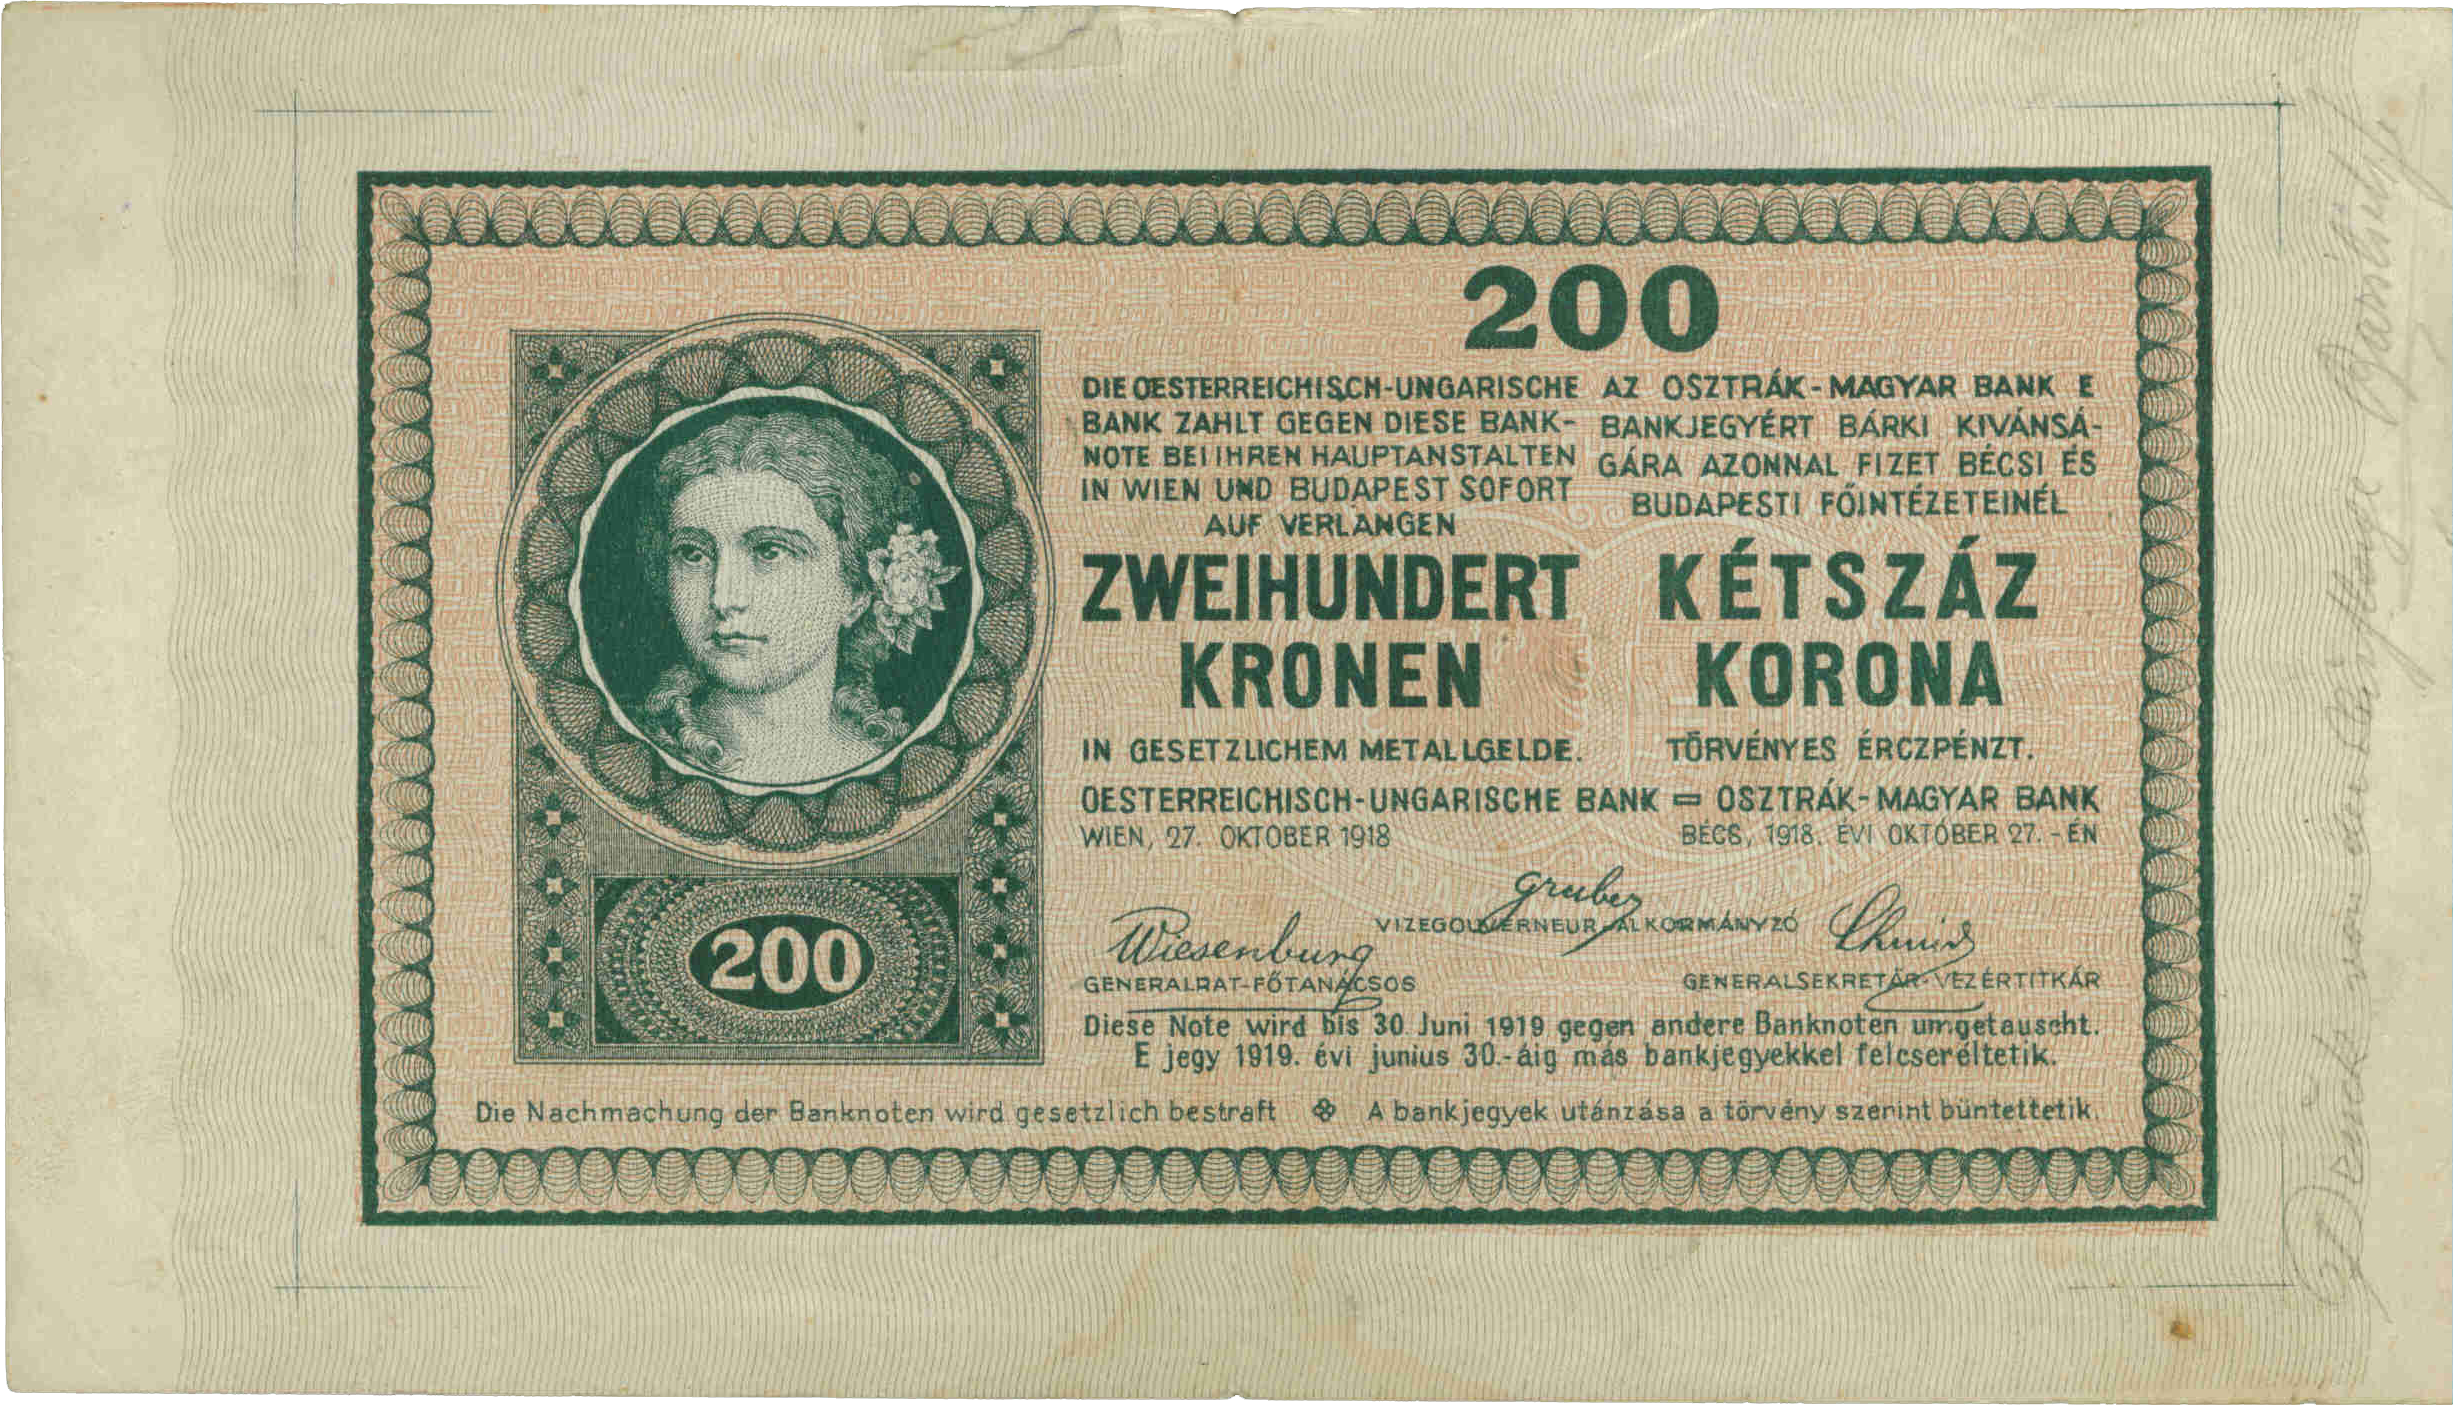 Пробная печать банкноты 200 крон 1918 года (аверс)